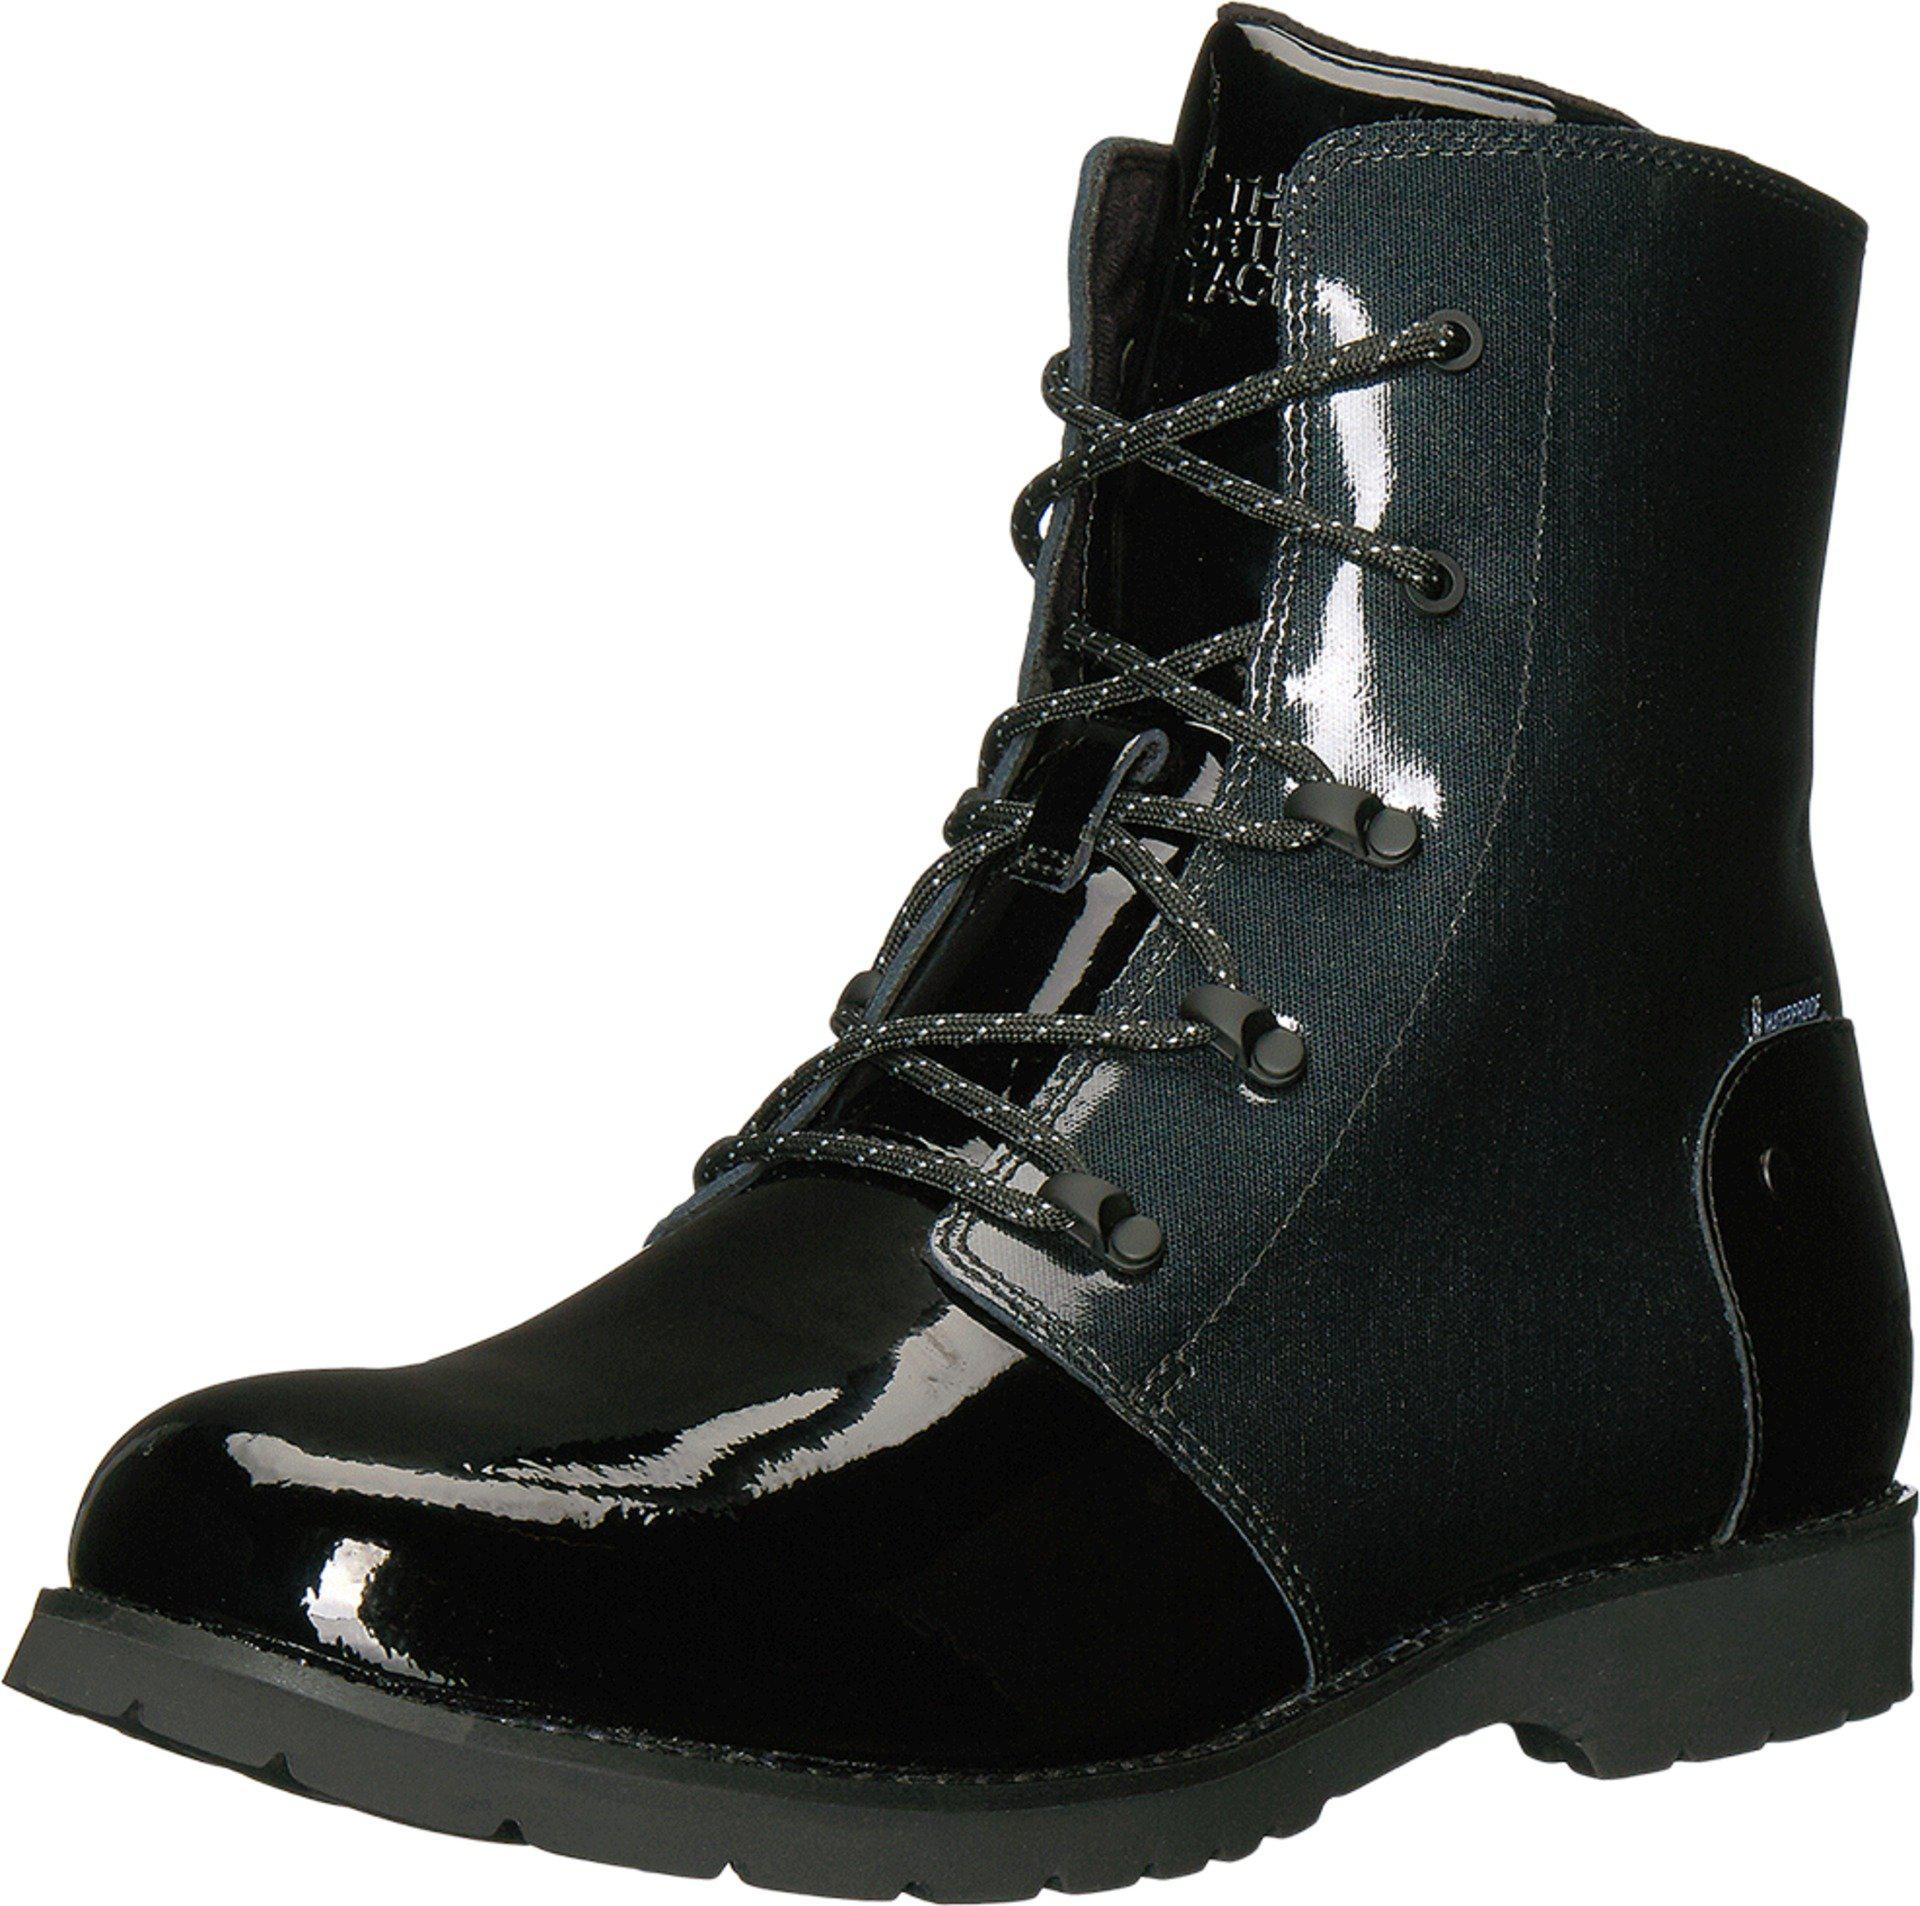 women's ballard rain boots